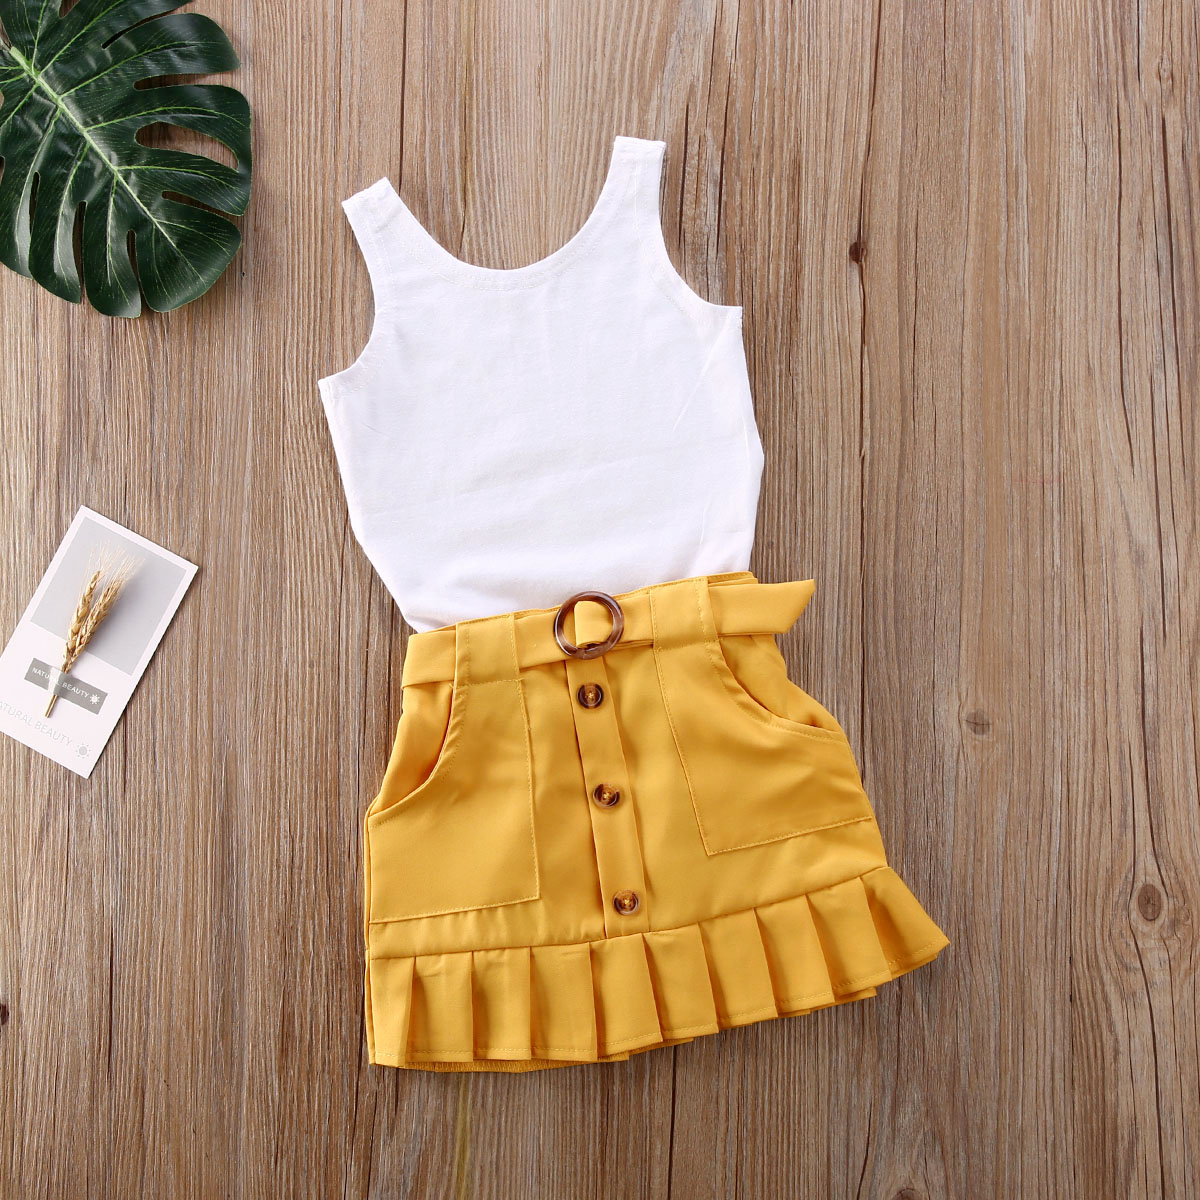 2 sztuk maluch dzieci dziewczynka ubrania zestawy bez rękawów jednolity kolor, kamizelka Romper żółty plisowana spódnica strój na lato zestaw